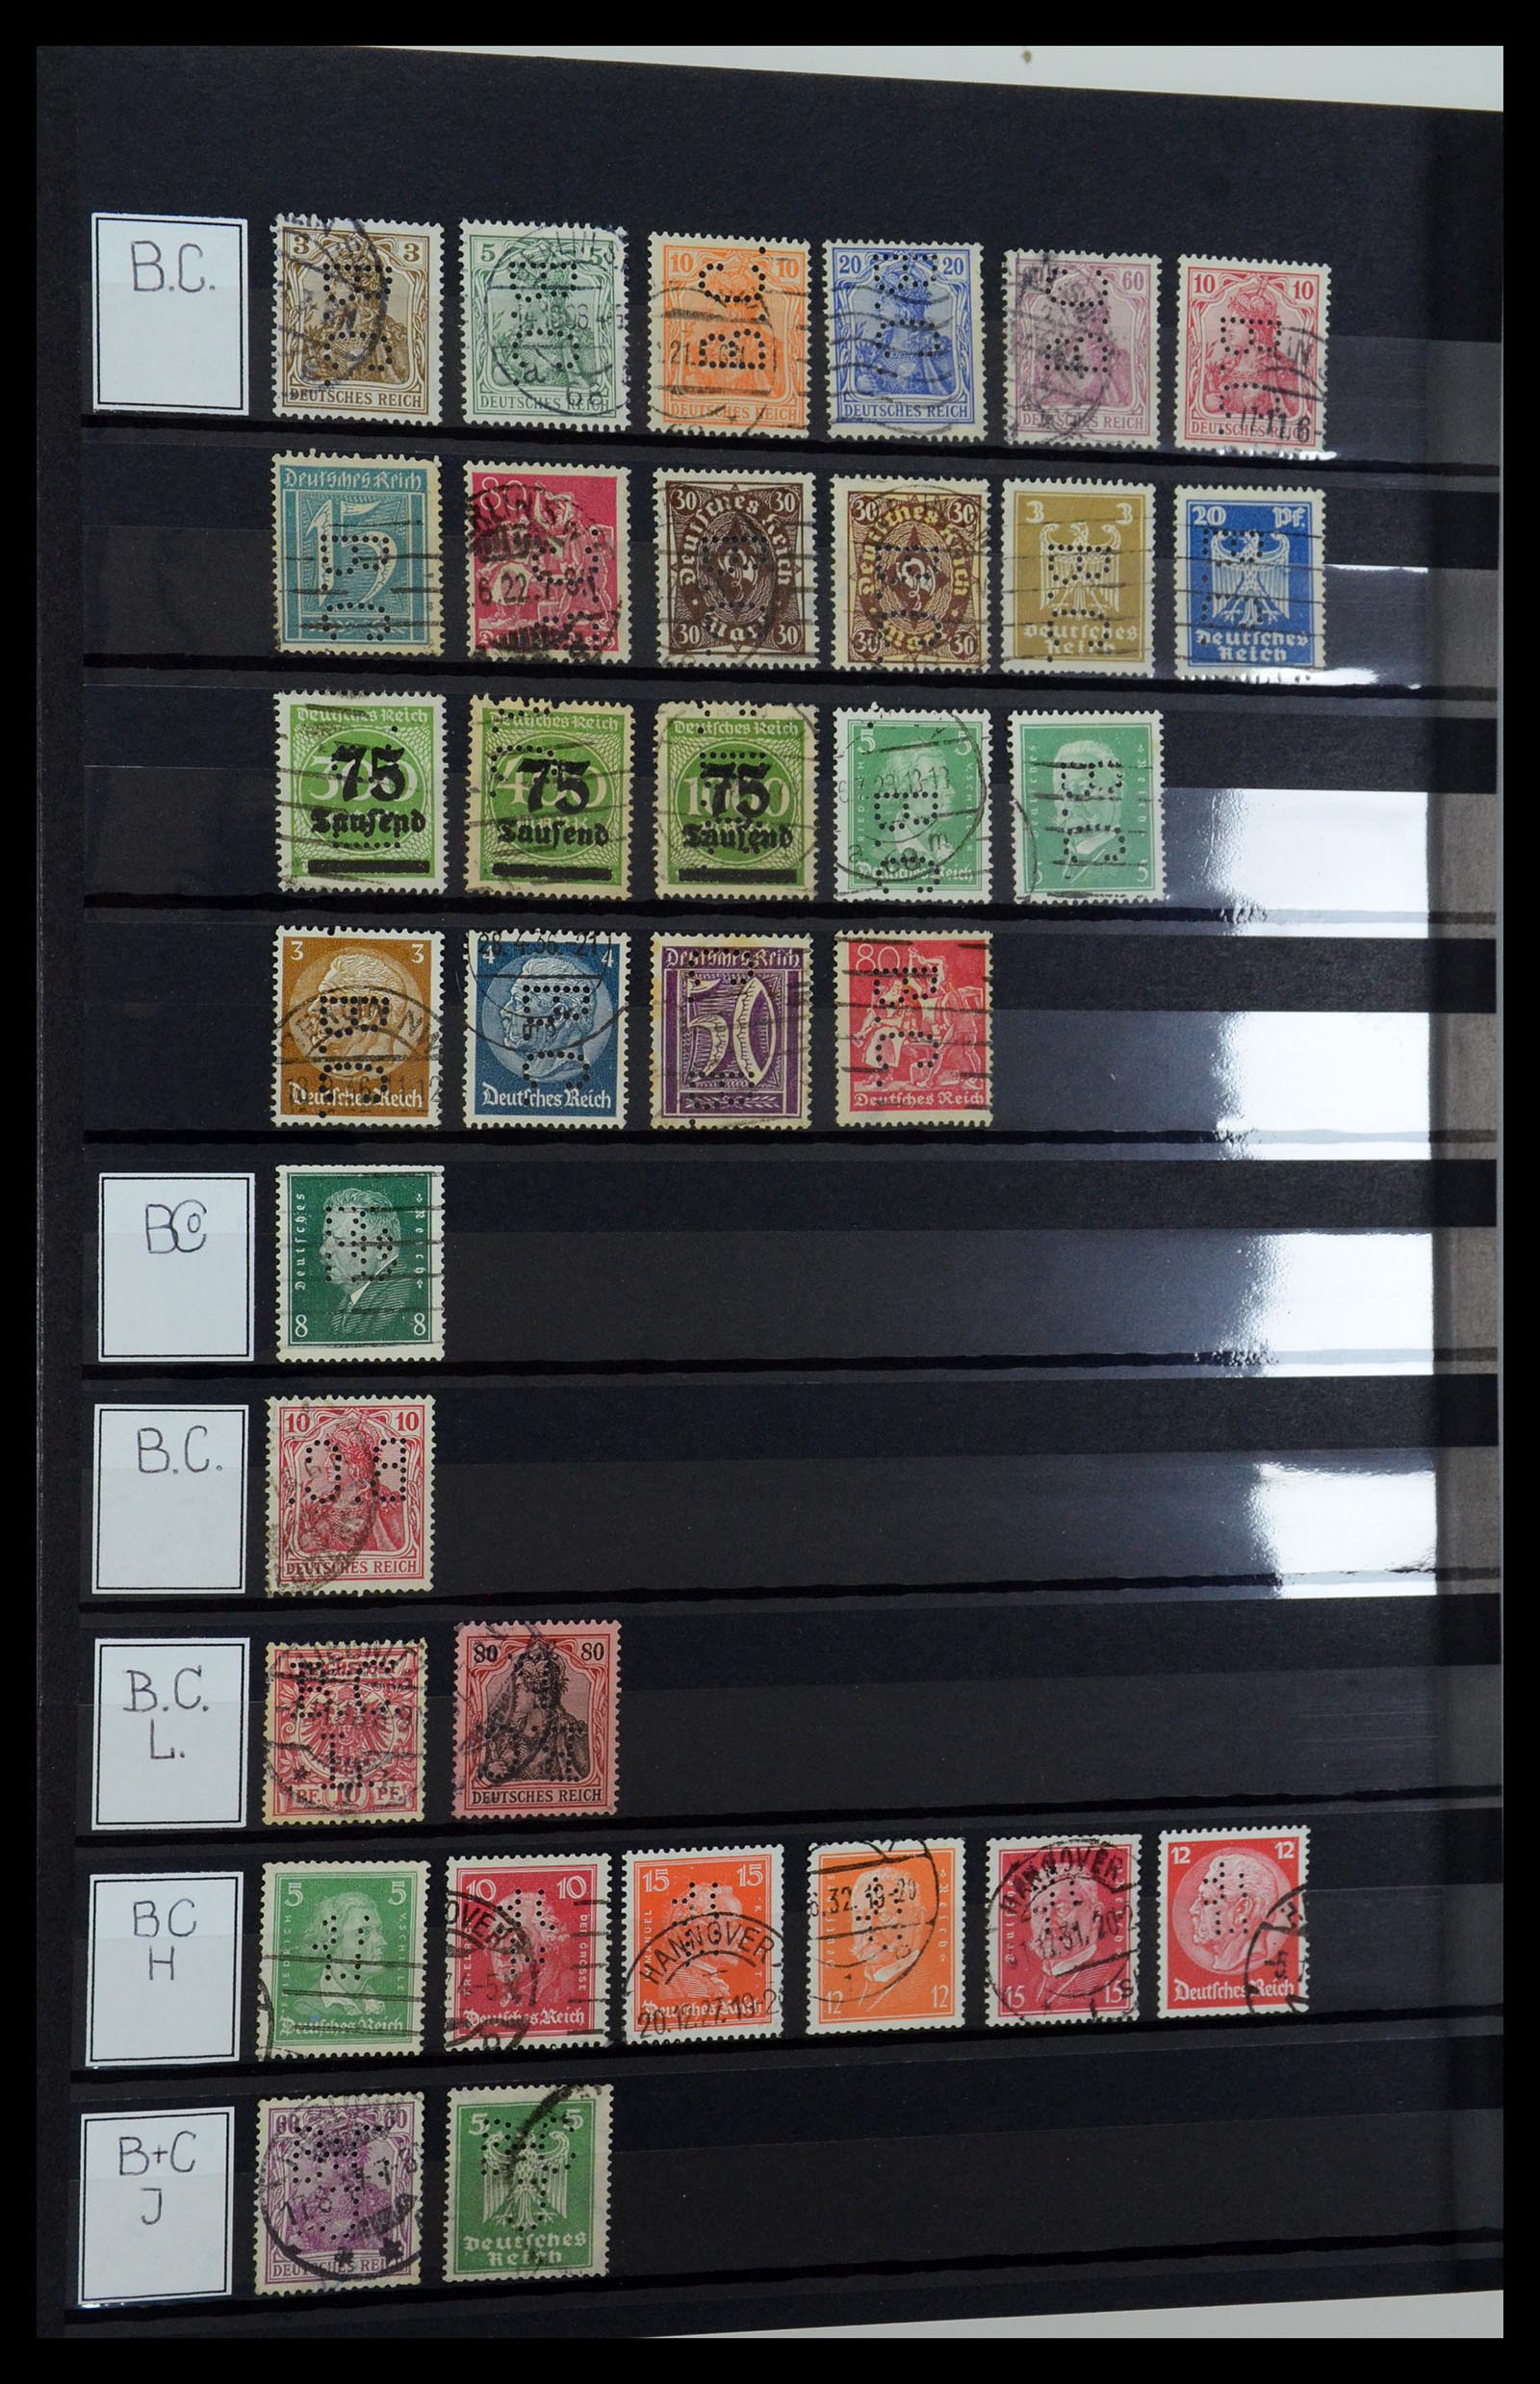 36405 036 - Stamp collection 36405 German Reich perfins 1880-1945.